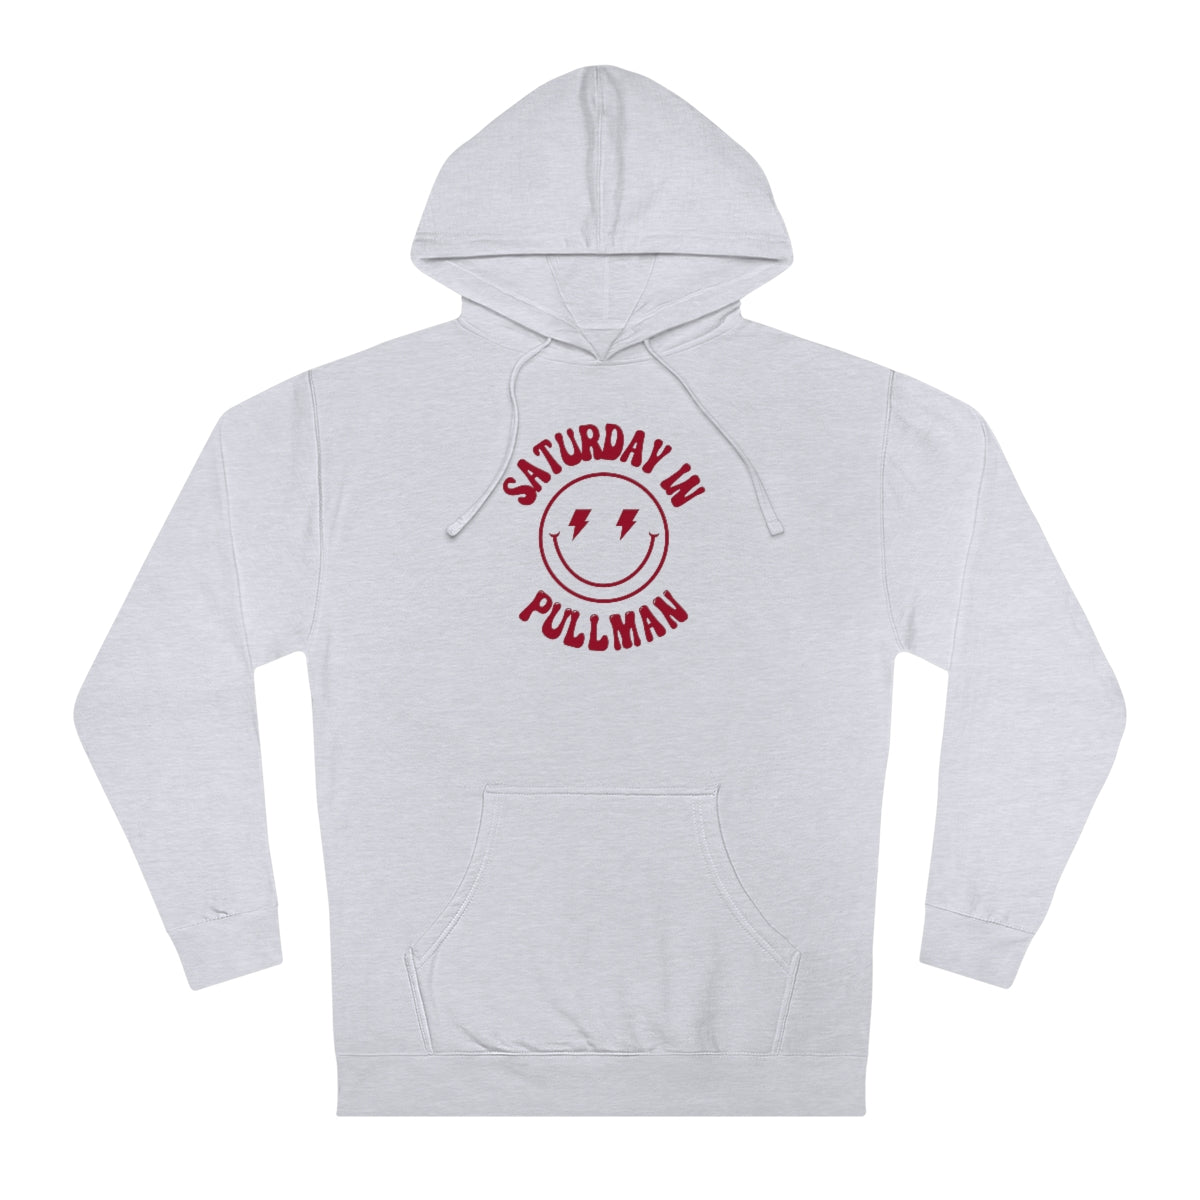 Smiley Pullman Hooded Sweatshirt - GG - ITC